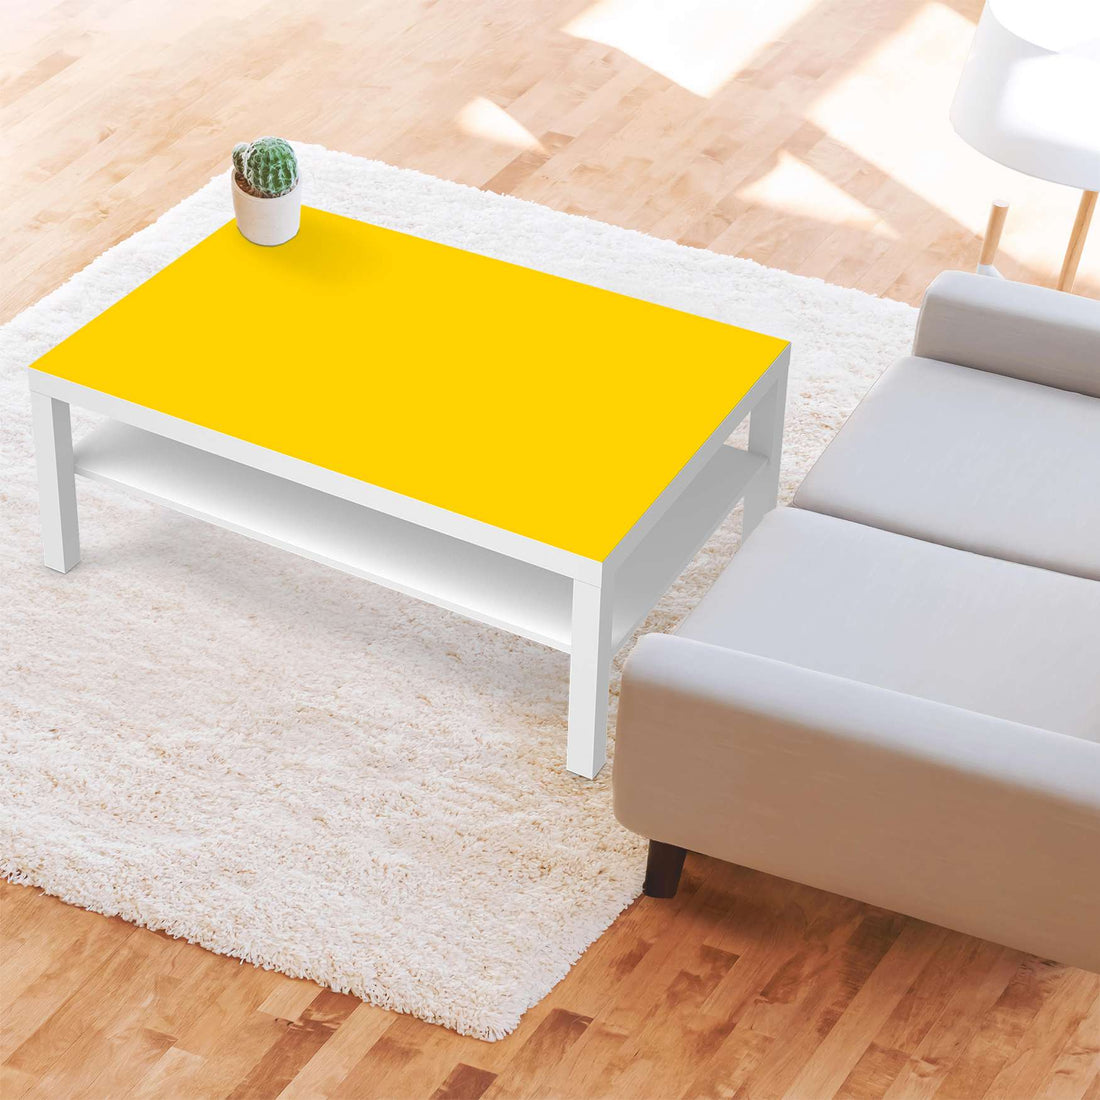 Klebefolie Gelb Dark - IKEA Lack Tisch 118x78 cm - Wohnzimmer